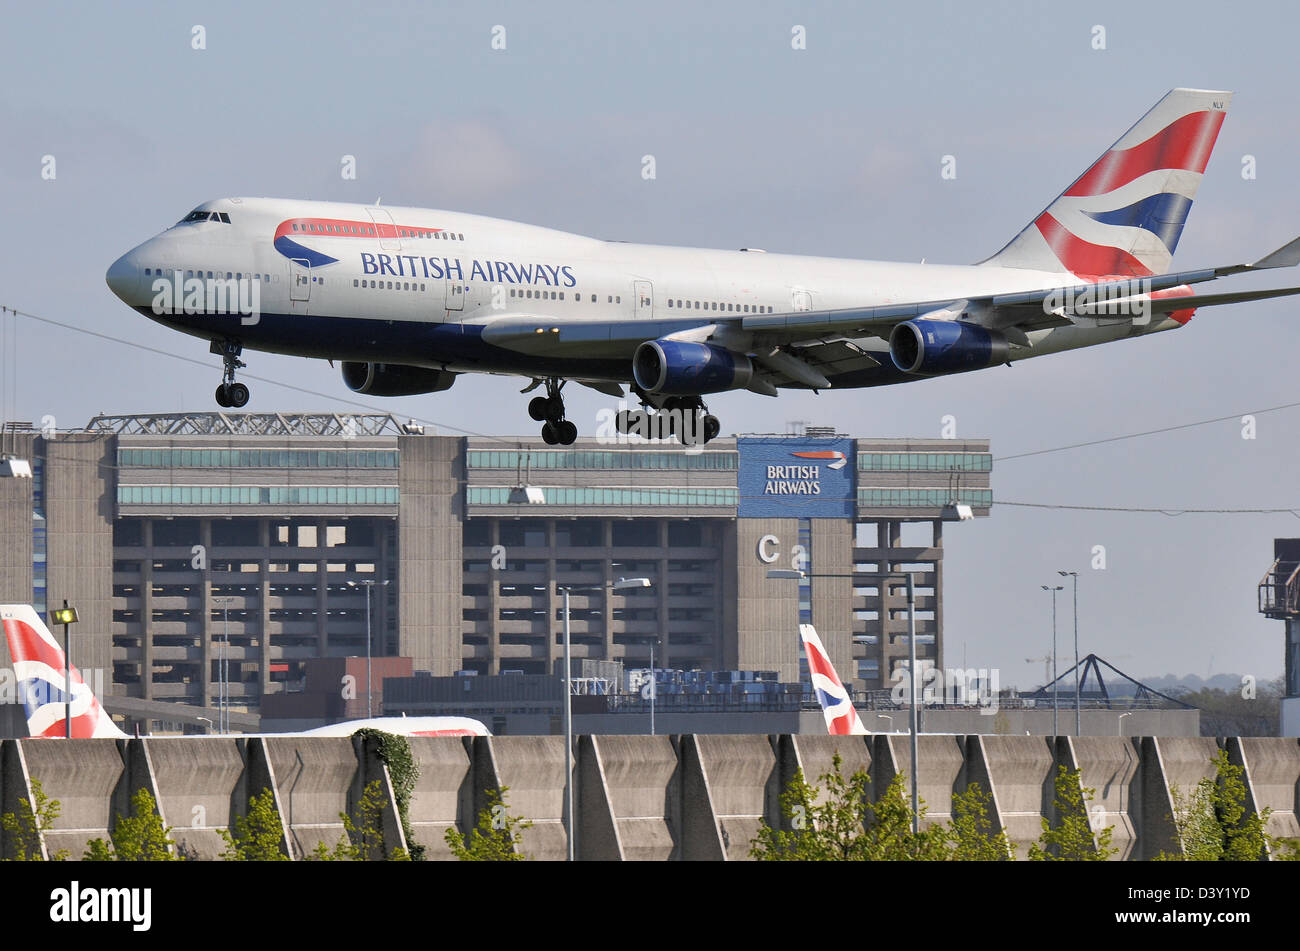 L'avion British Airways 747 arrive pour atterrir à Heathrow en passant par le hangar de maintenance British Airways avec d'autres queues d'avion BA Banque D'Images